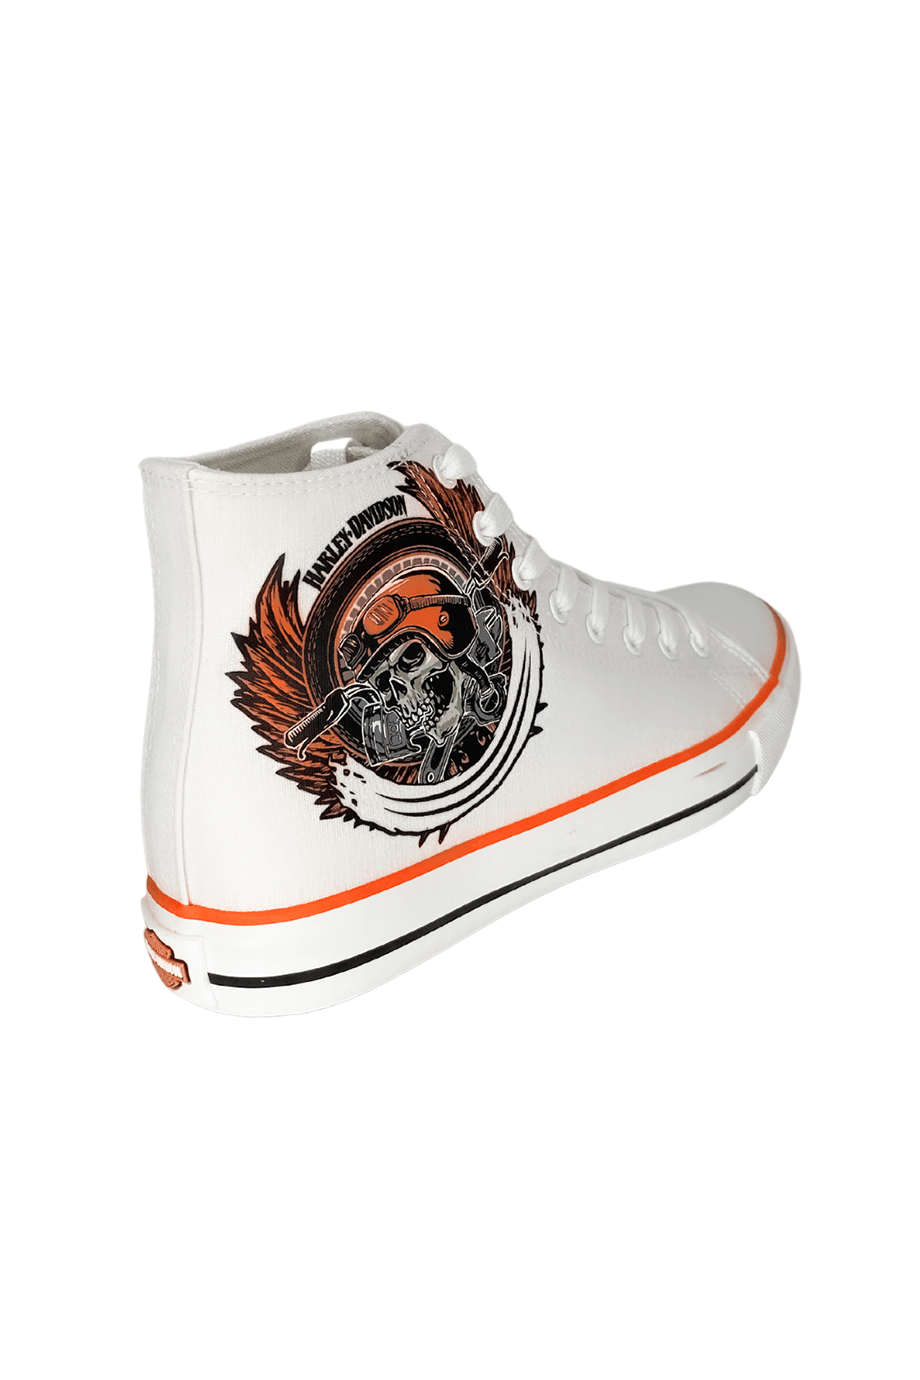 Harley-Davidson® Pittsburgh White Tekstil Erkek Sneaker